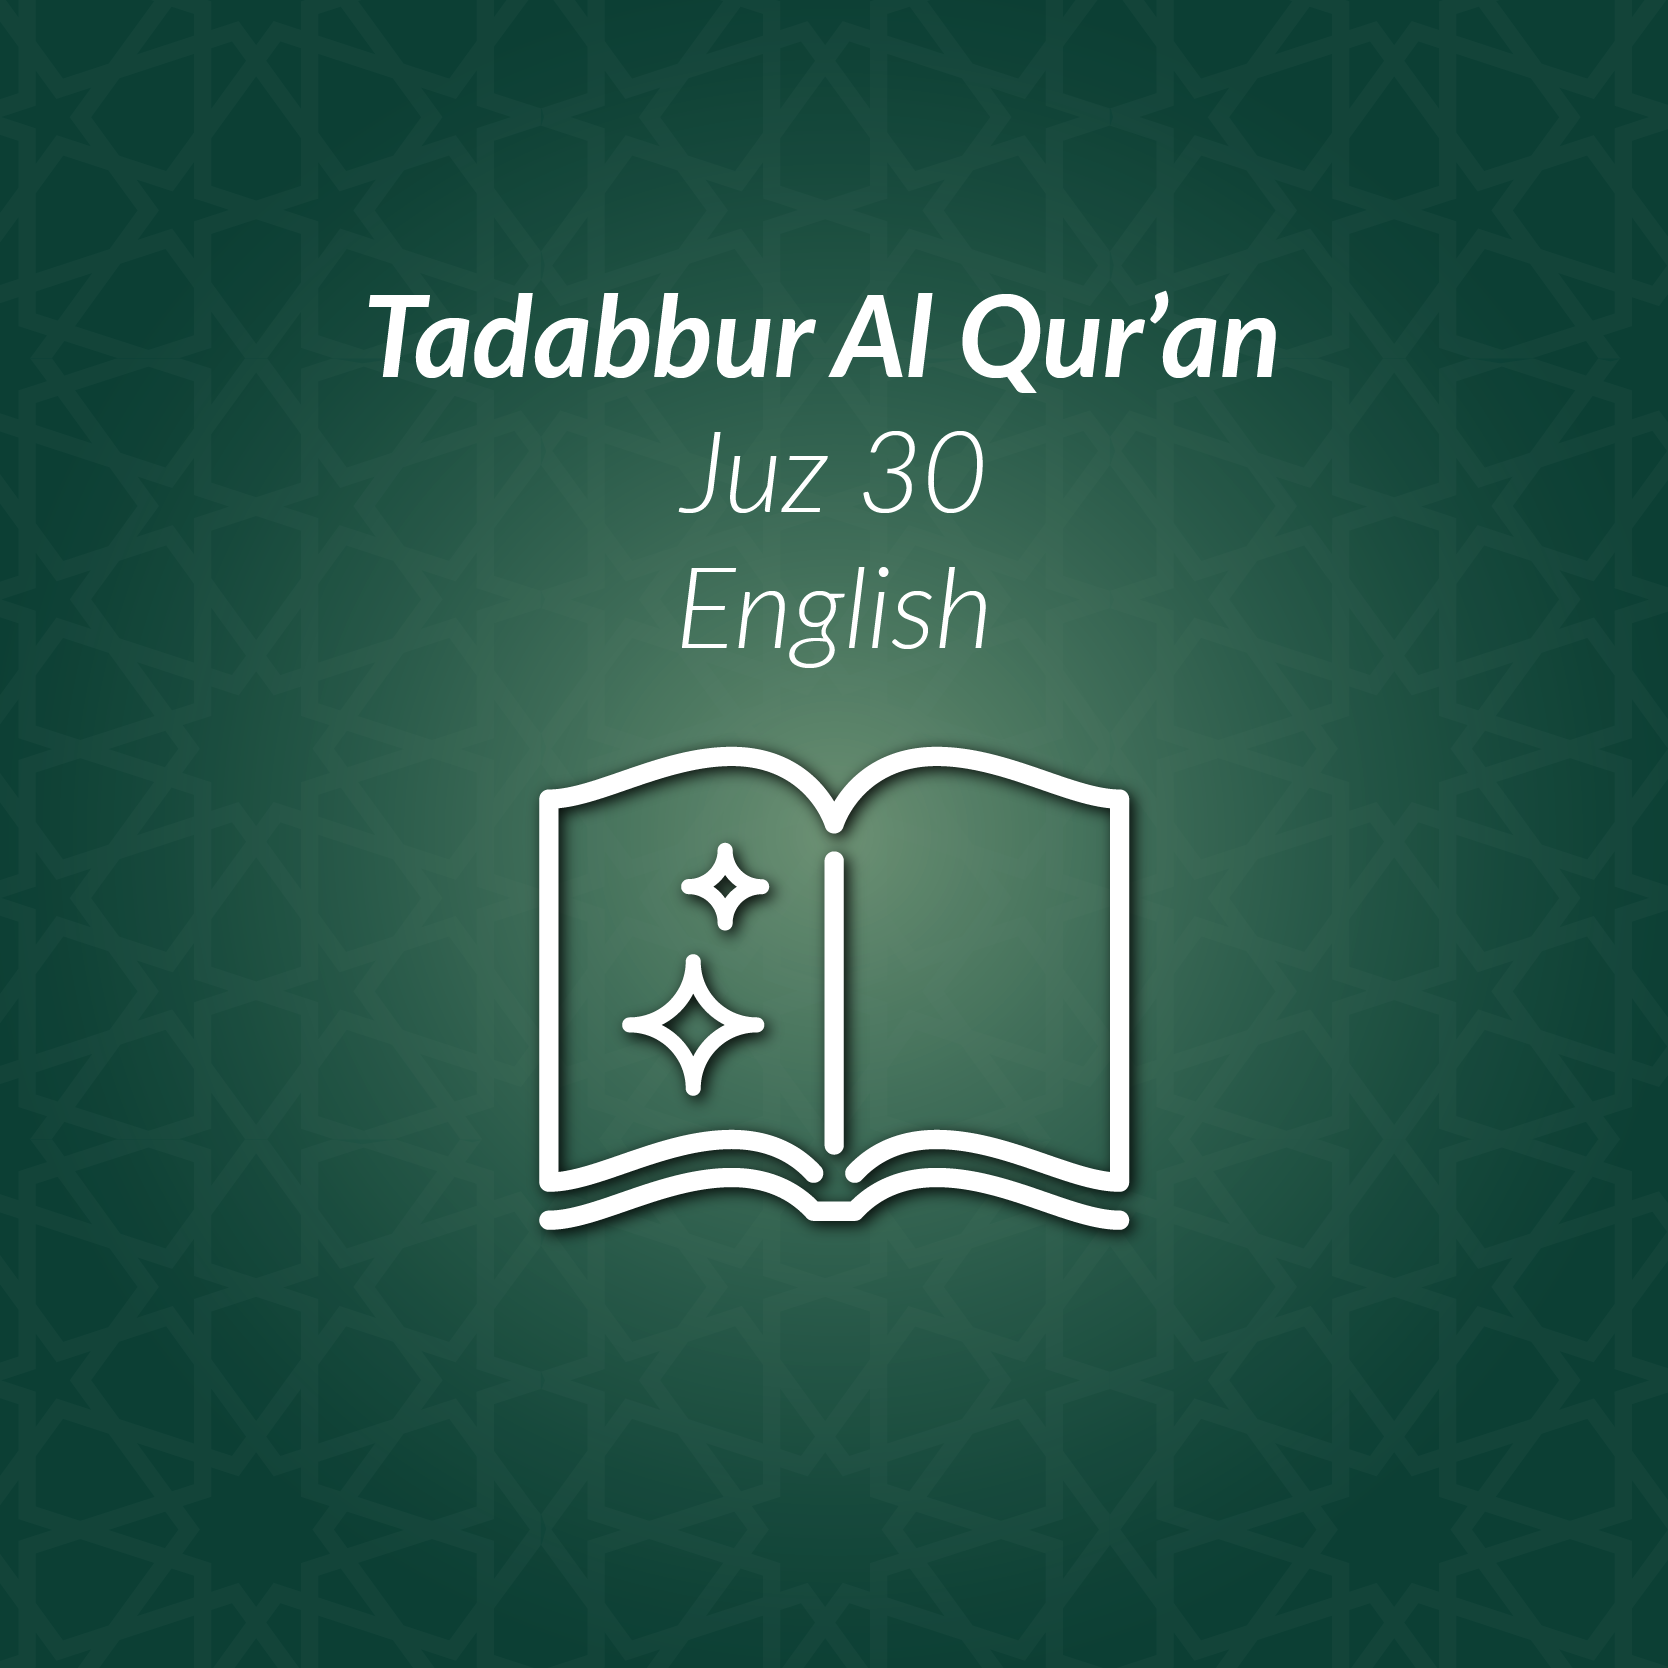 Tadabbur Al Qur’an English Juz’ 30 – Recordings | AlHuda eCampus ...